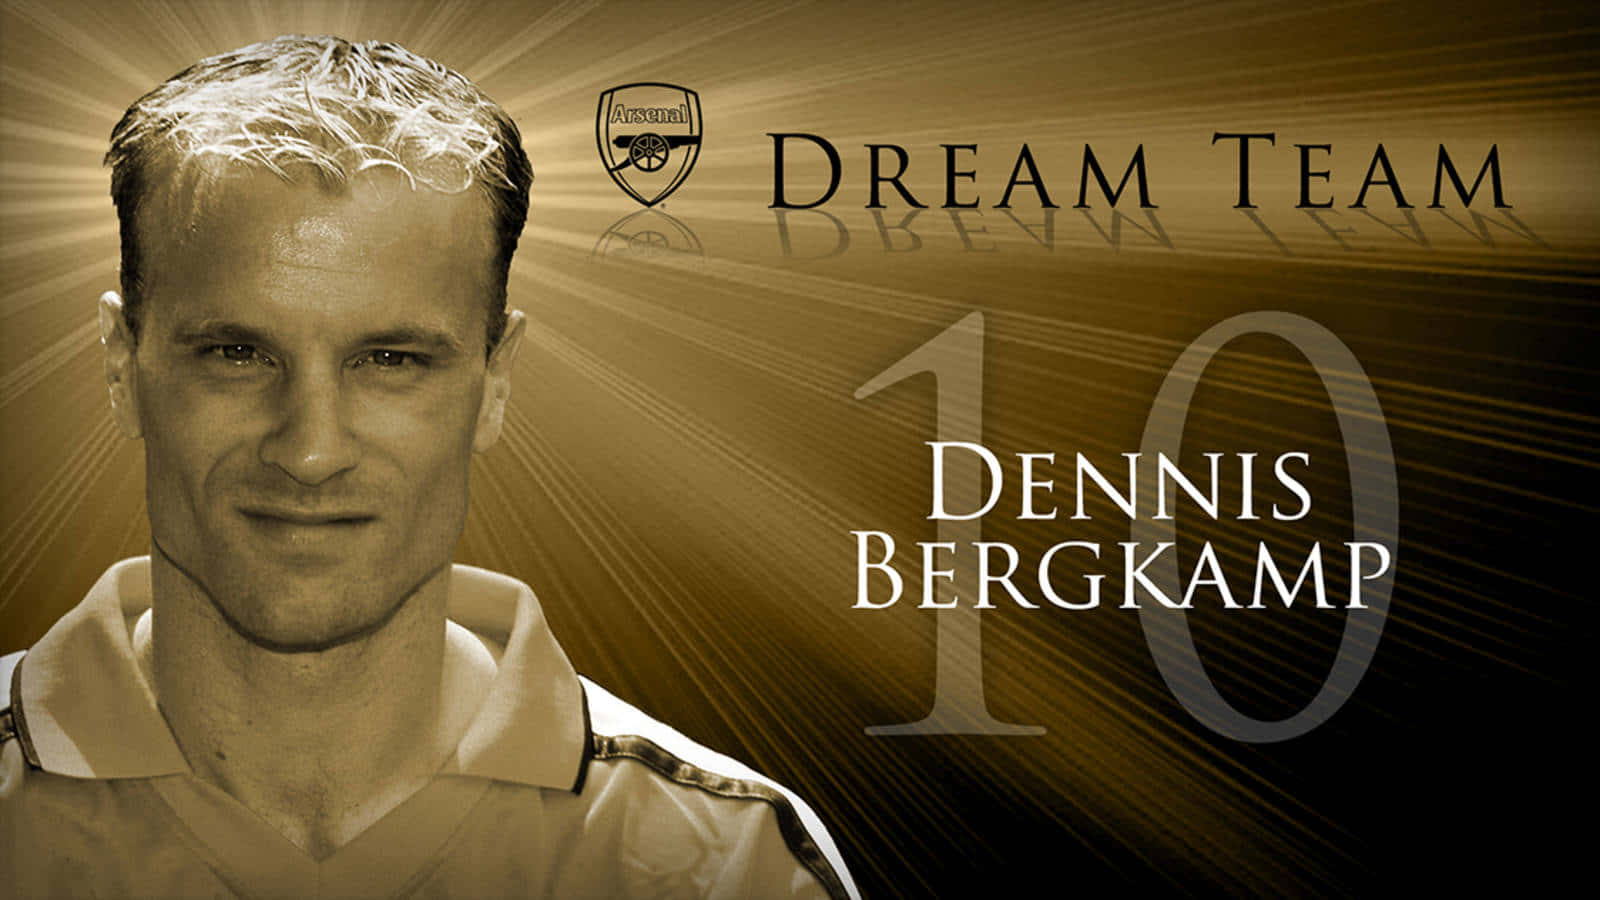 Dennisbergkamp, Del Equipo De Ensueño Del Arsenal. Fondo de pantalla